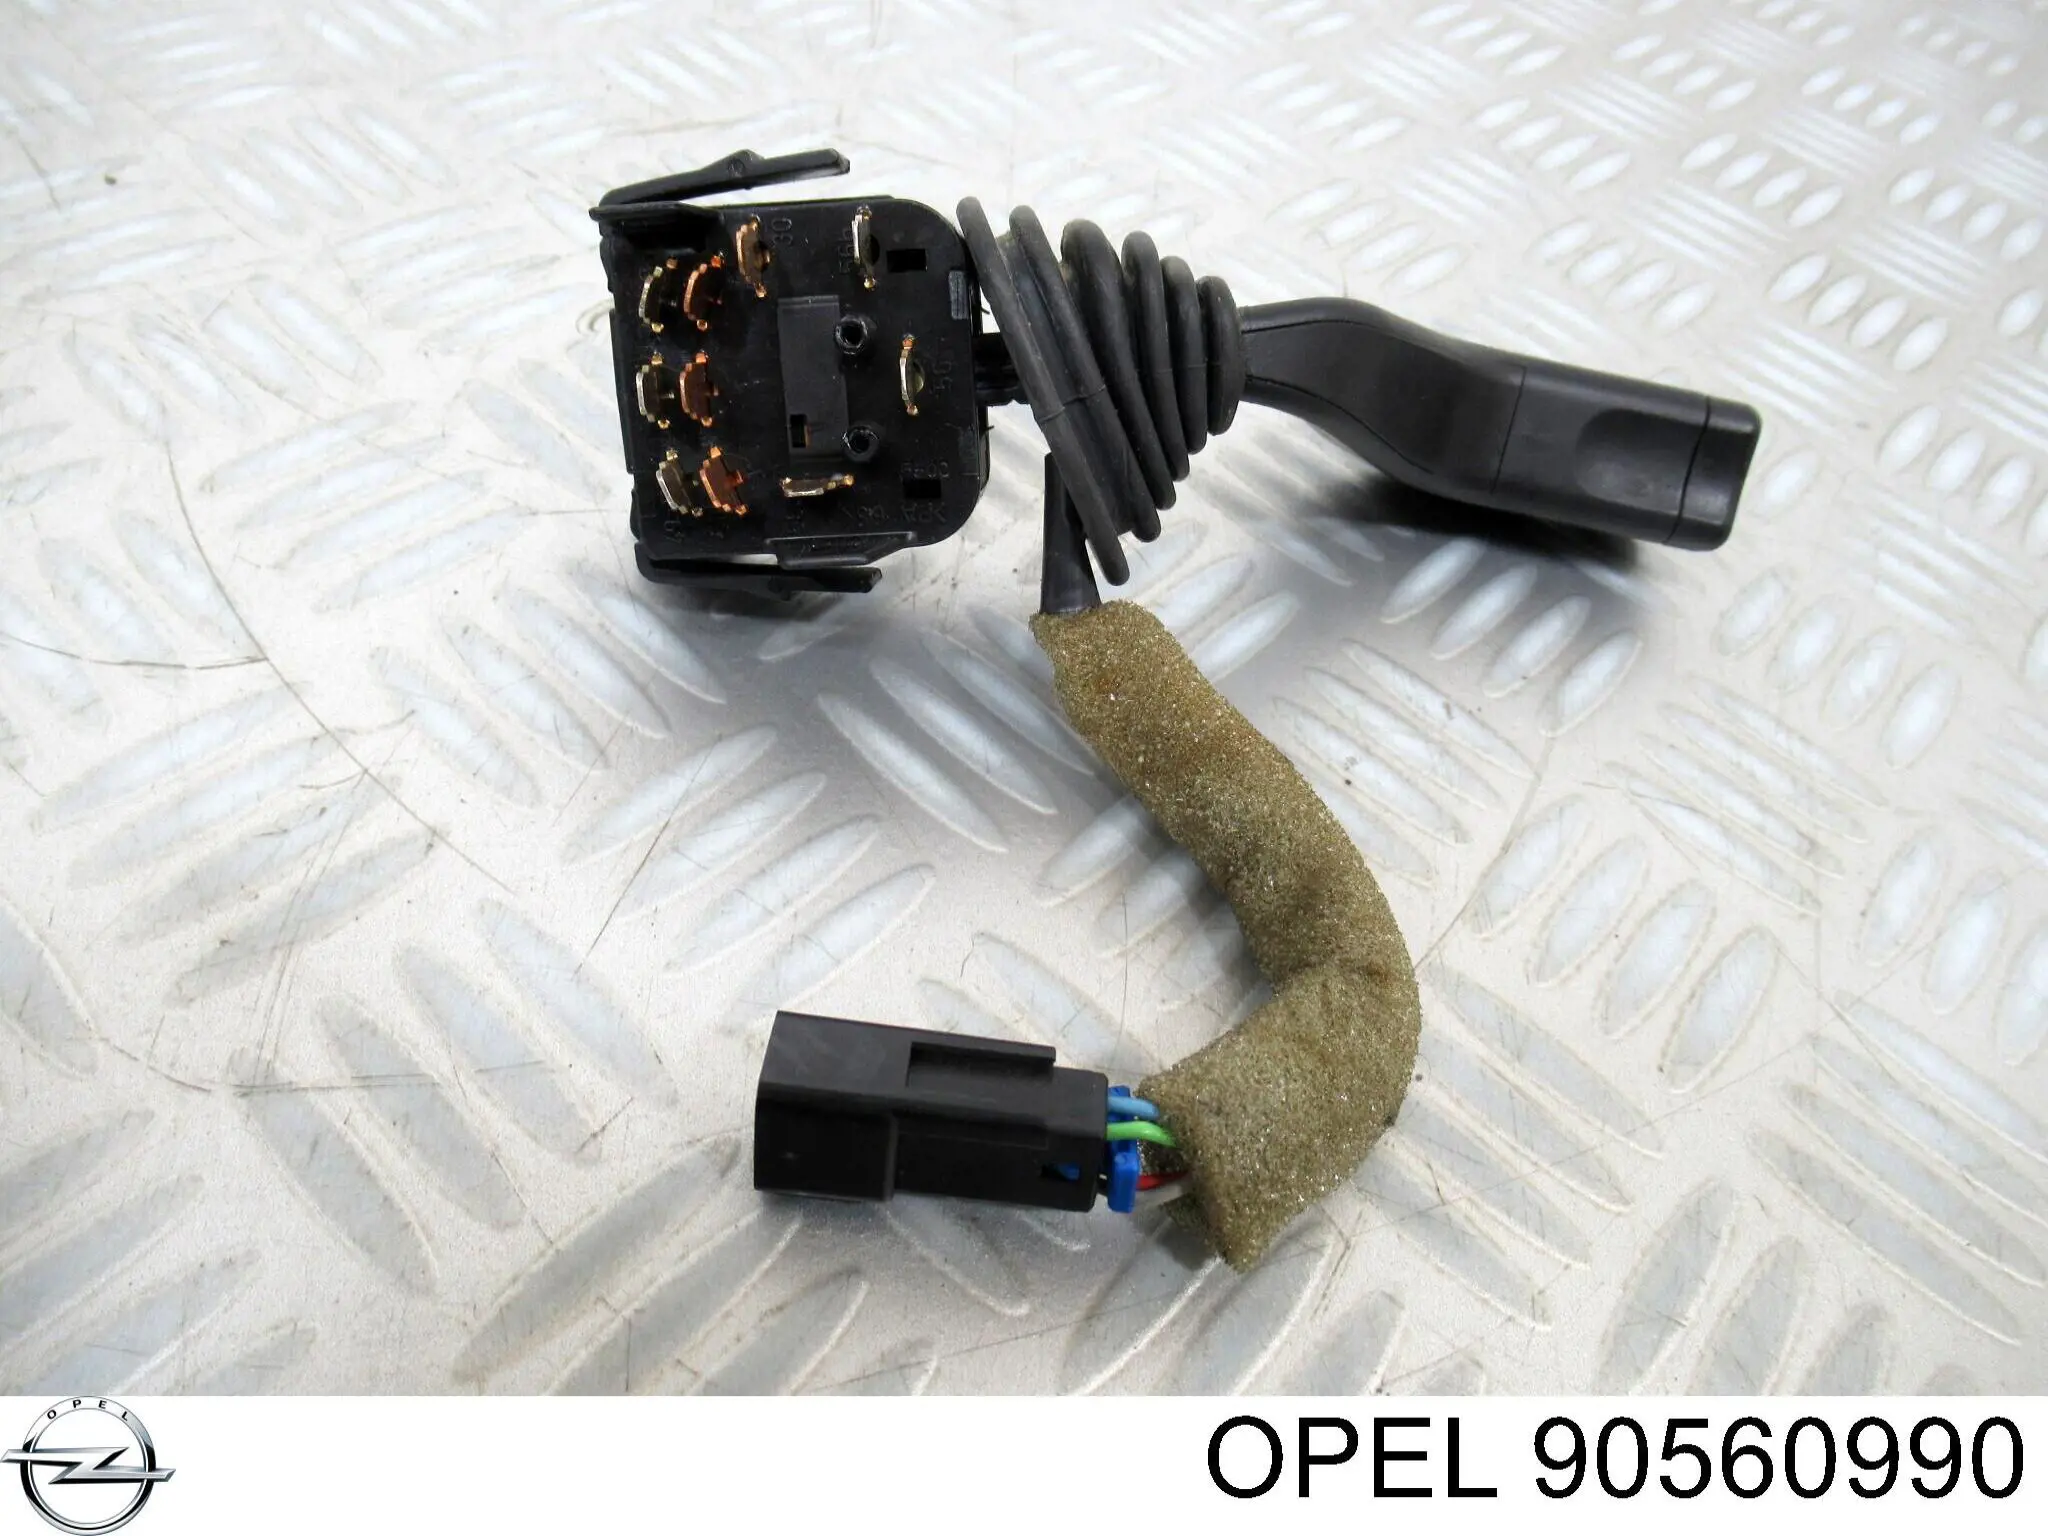 90560990 Opel comutador esquerdo instalado na coluna da direção